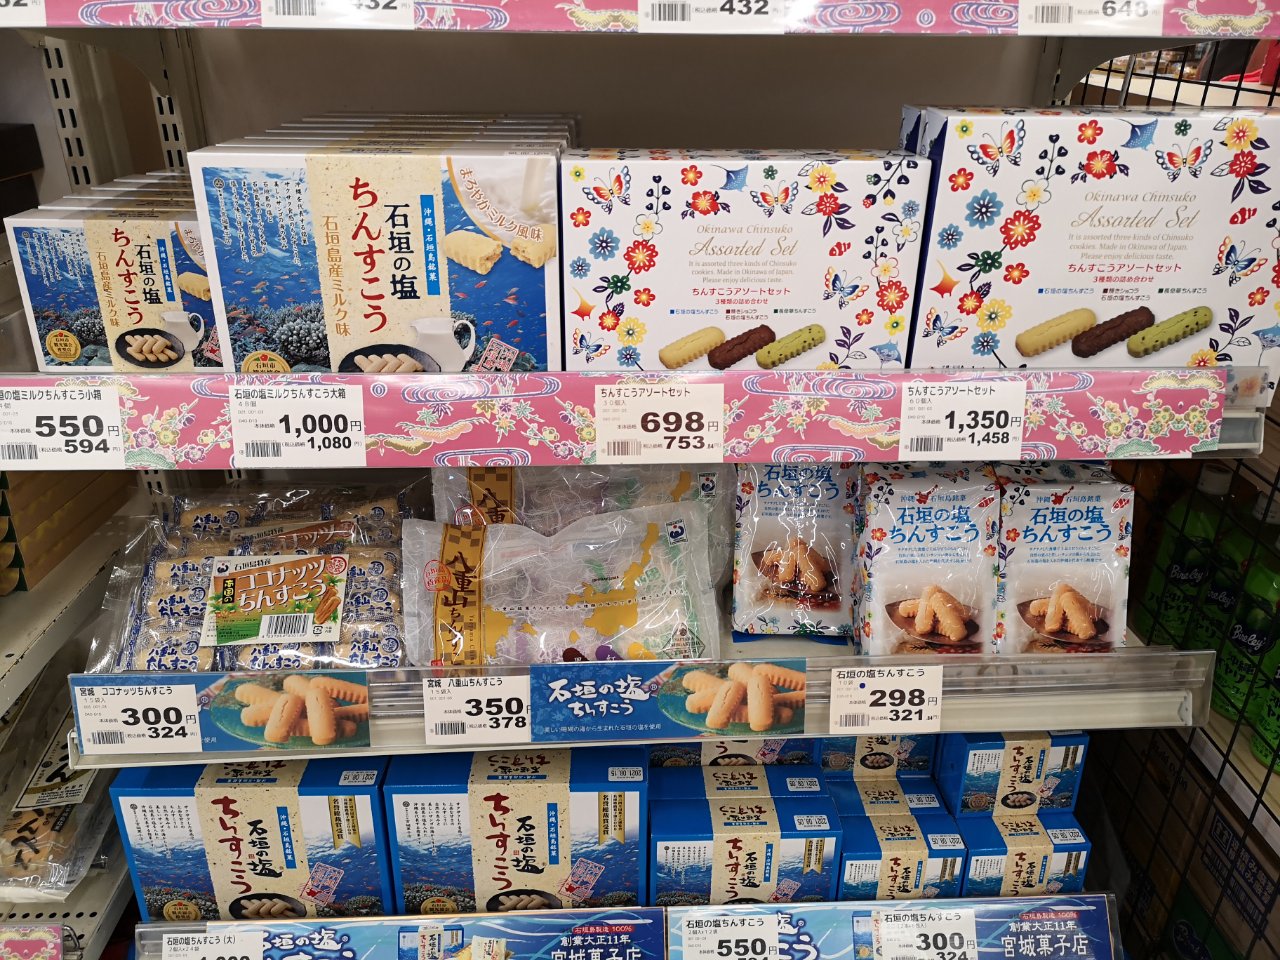 石垣島おみやげ格安購入には「マックスバリュやいま店」が超絶便利。場所・行き方・商品を写真で紹介。ばらまきはスーパーで買うのが安い。 - nanatabi